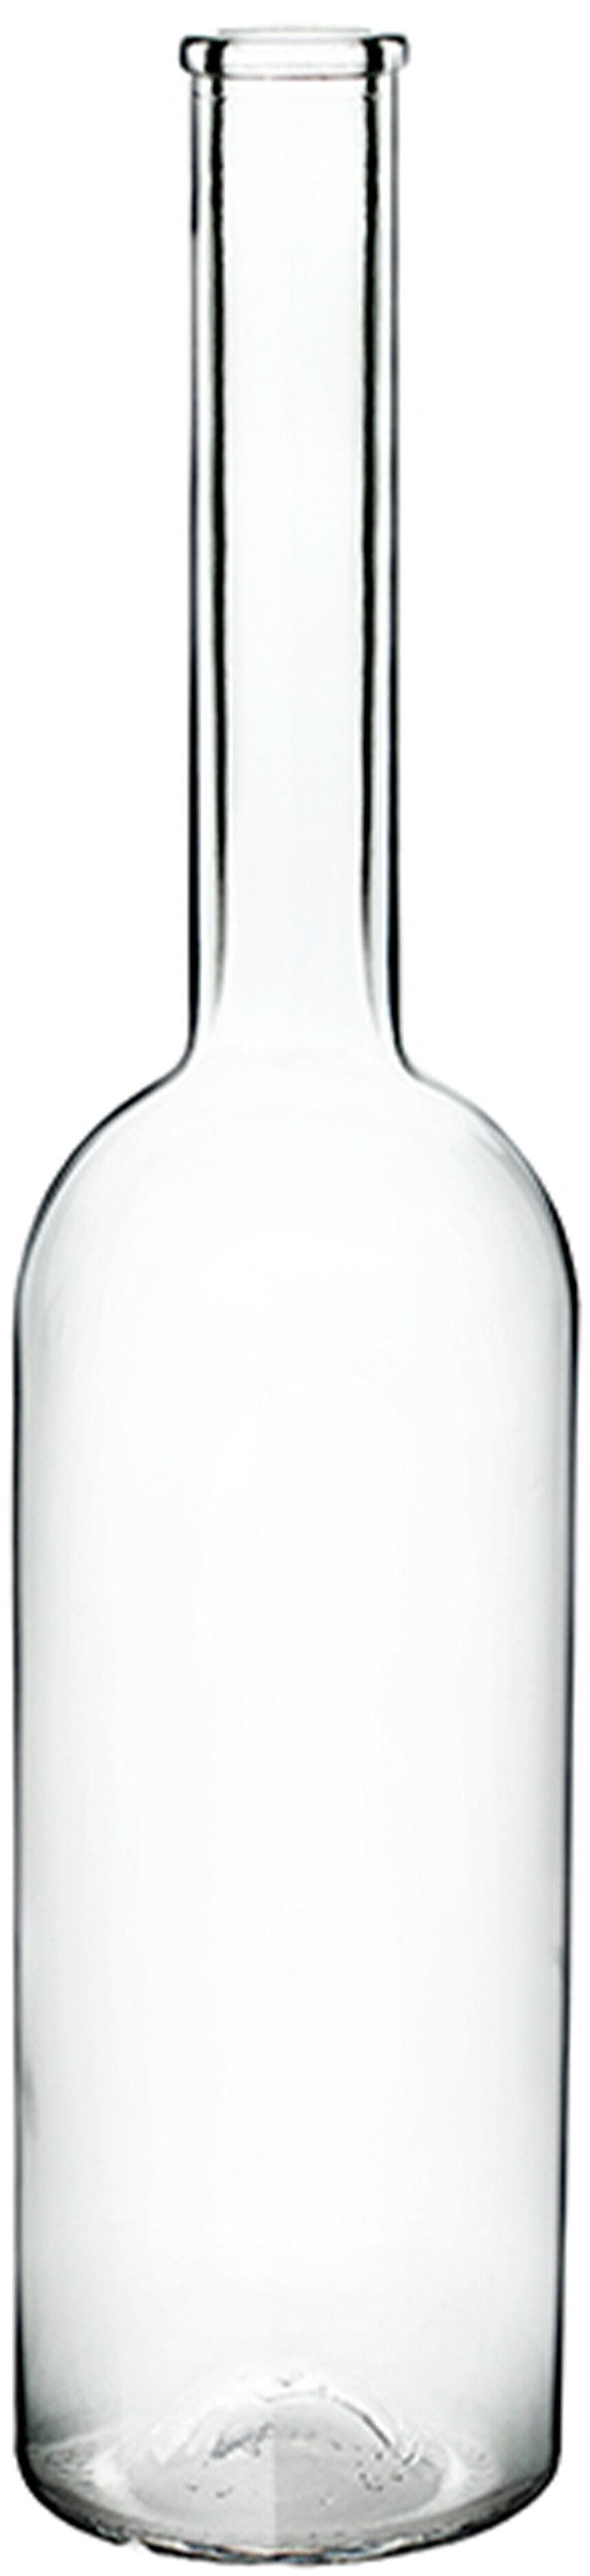 Bottiglia SINFONIA  750 ml BG-Sughero